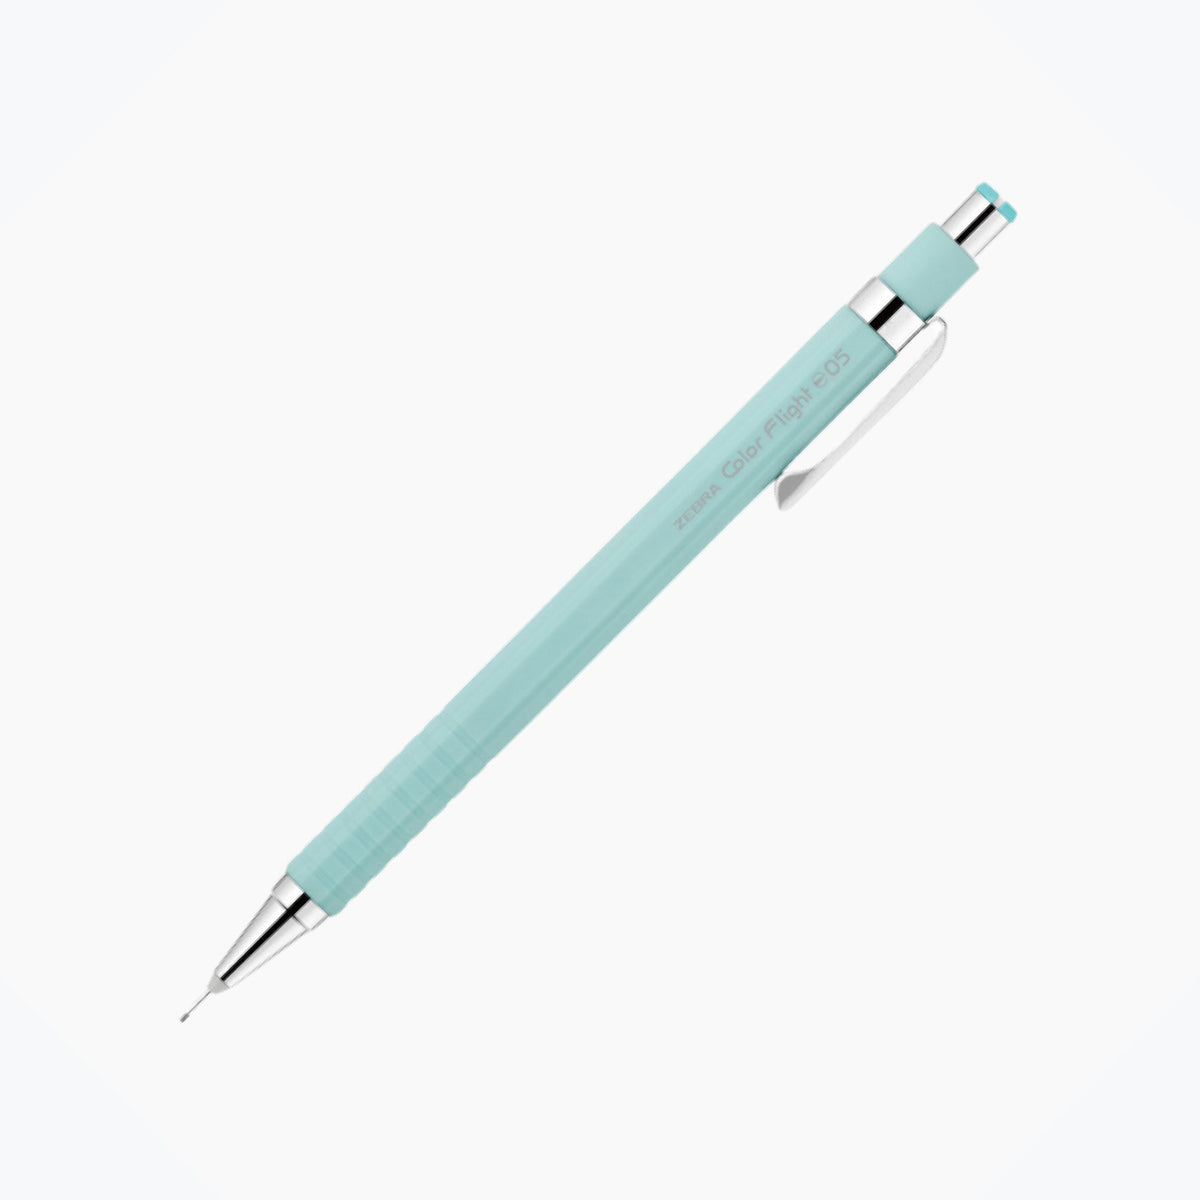 Zebra - Mechanical Pencil - Color Flight Pastel - 0.5mm - Mint <Outgoing>